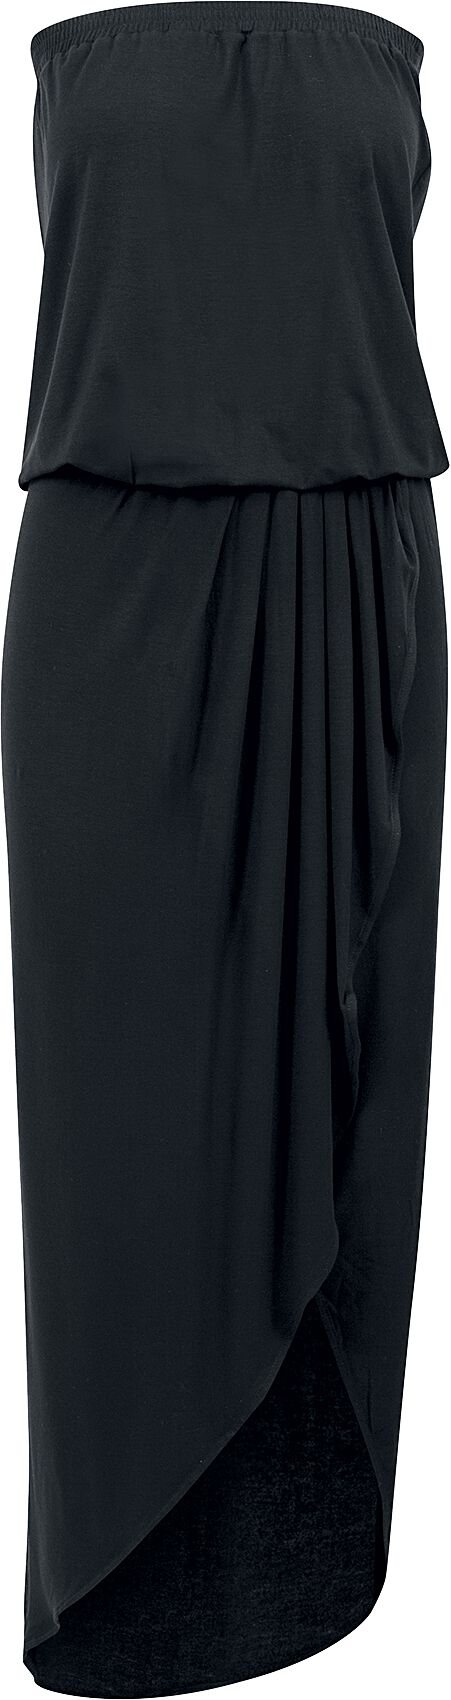 Urban Classics Kleid lang - Ladies Viscose Bandeau Dress - XS bis 5XL - für Damen - Größe 5XL - schwarz